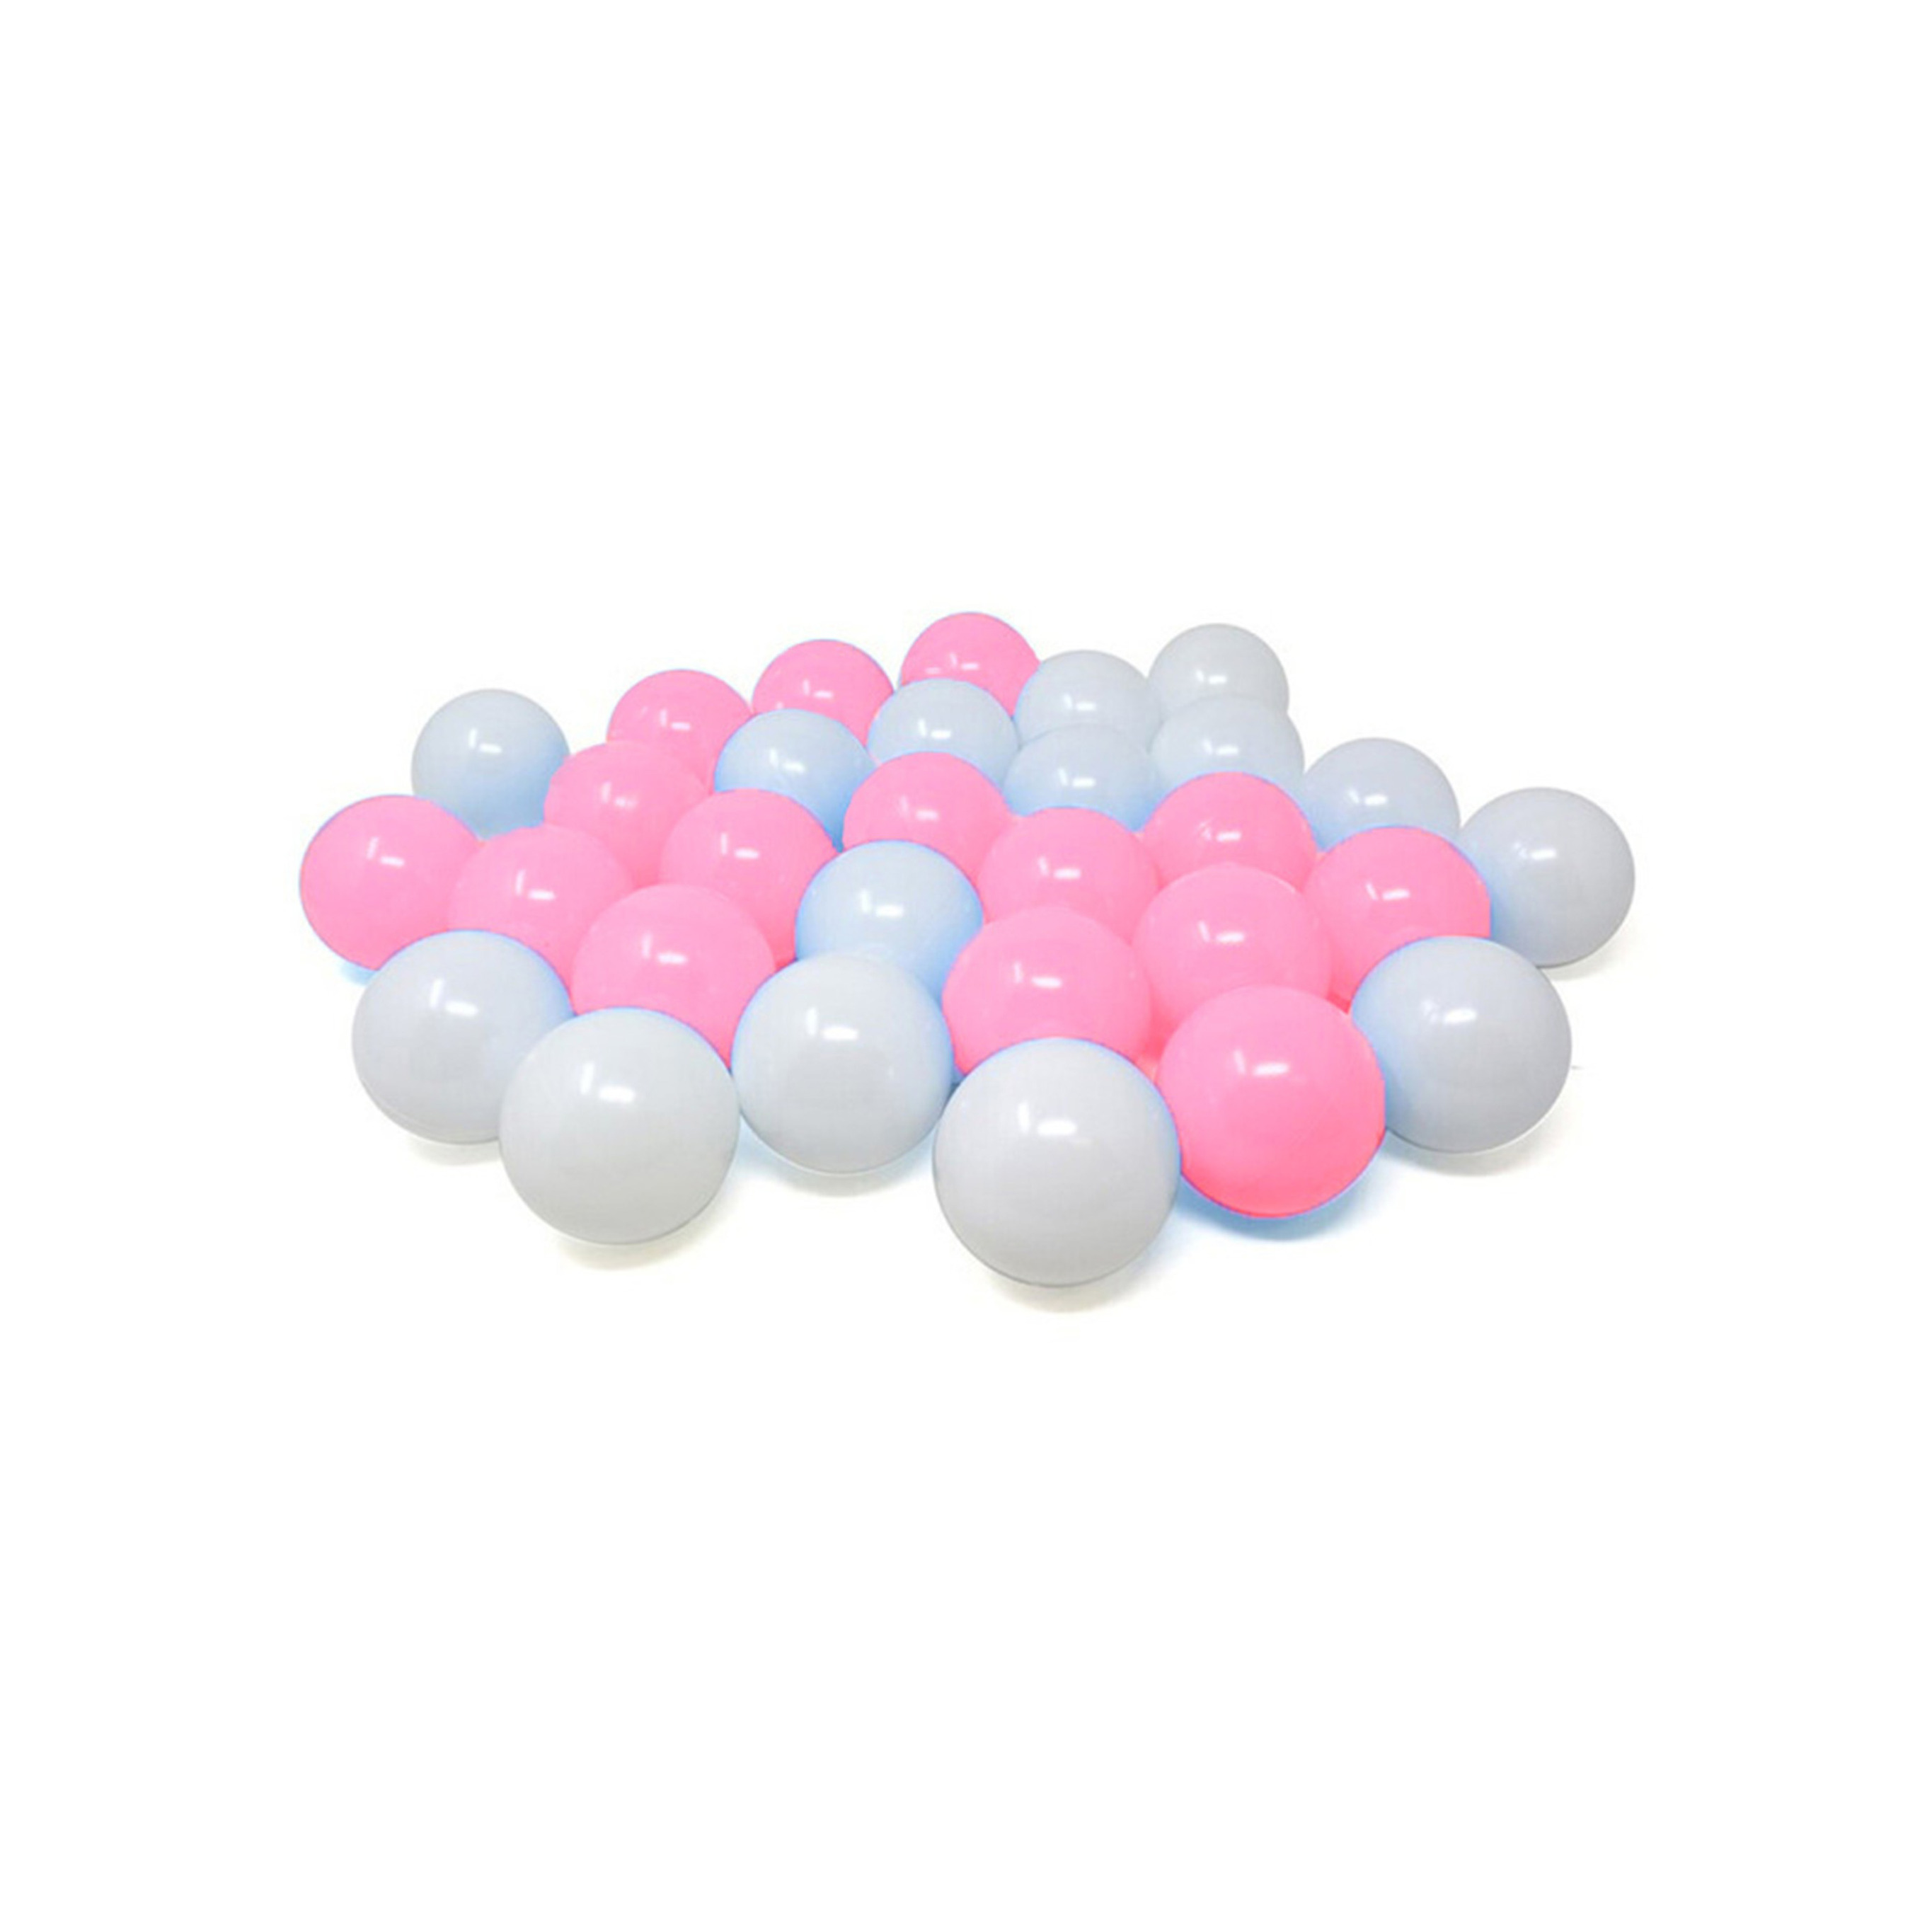 Kunststof ballenbak ballen - roze/wit - 30x stuks - ca 6 cm